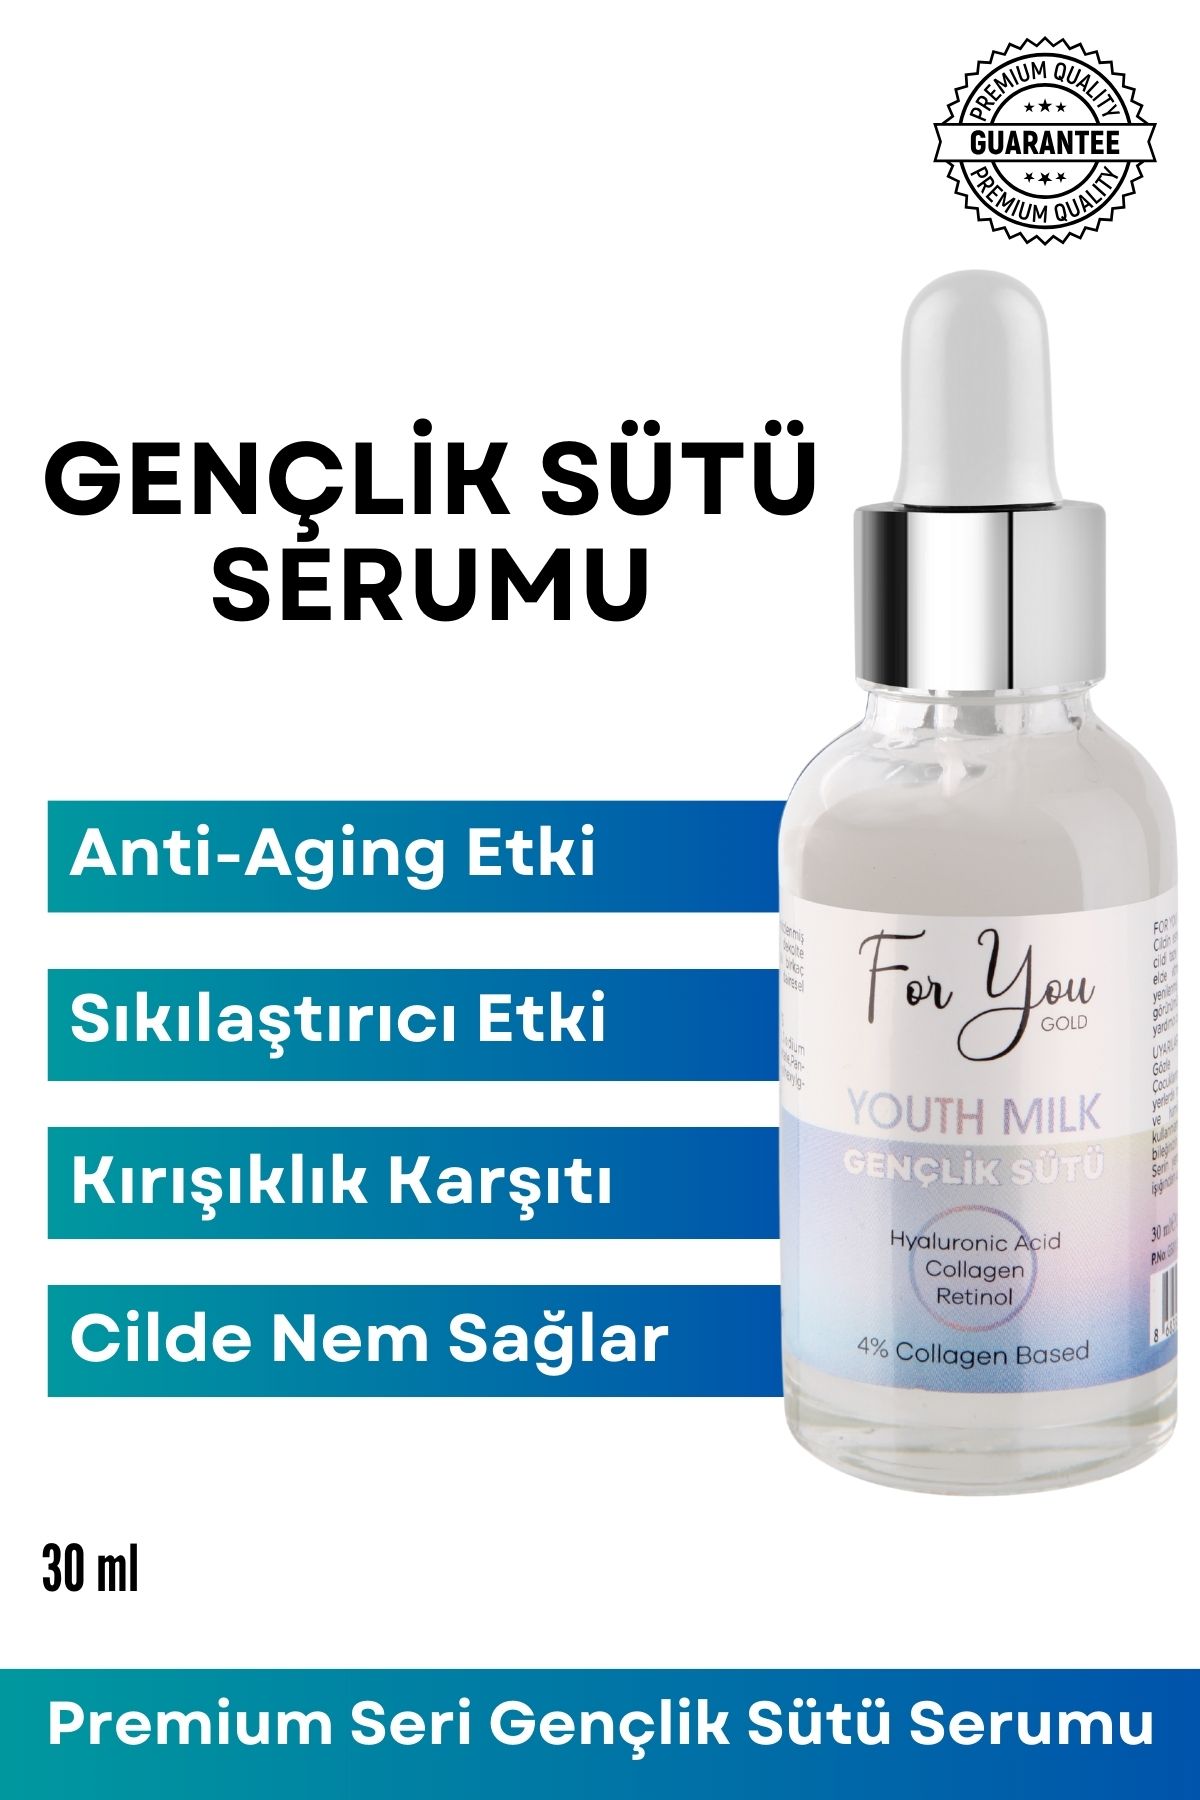 For You Gold Gençlik Sütü Serumu - Anti-aging, Kırışıklık Karşıtı (retinol-collagen-hyaluronic Acid) Yüz Serumu